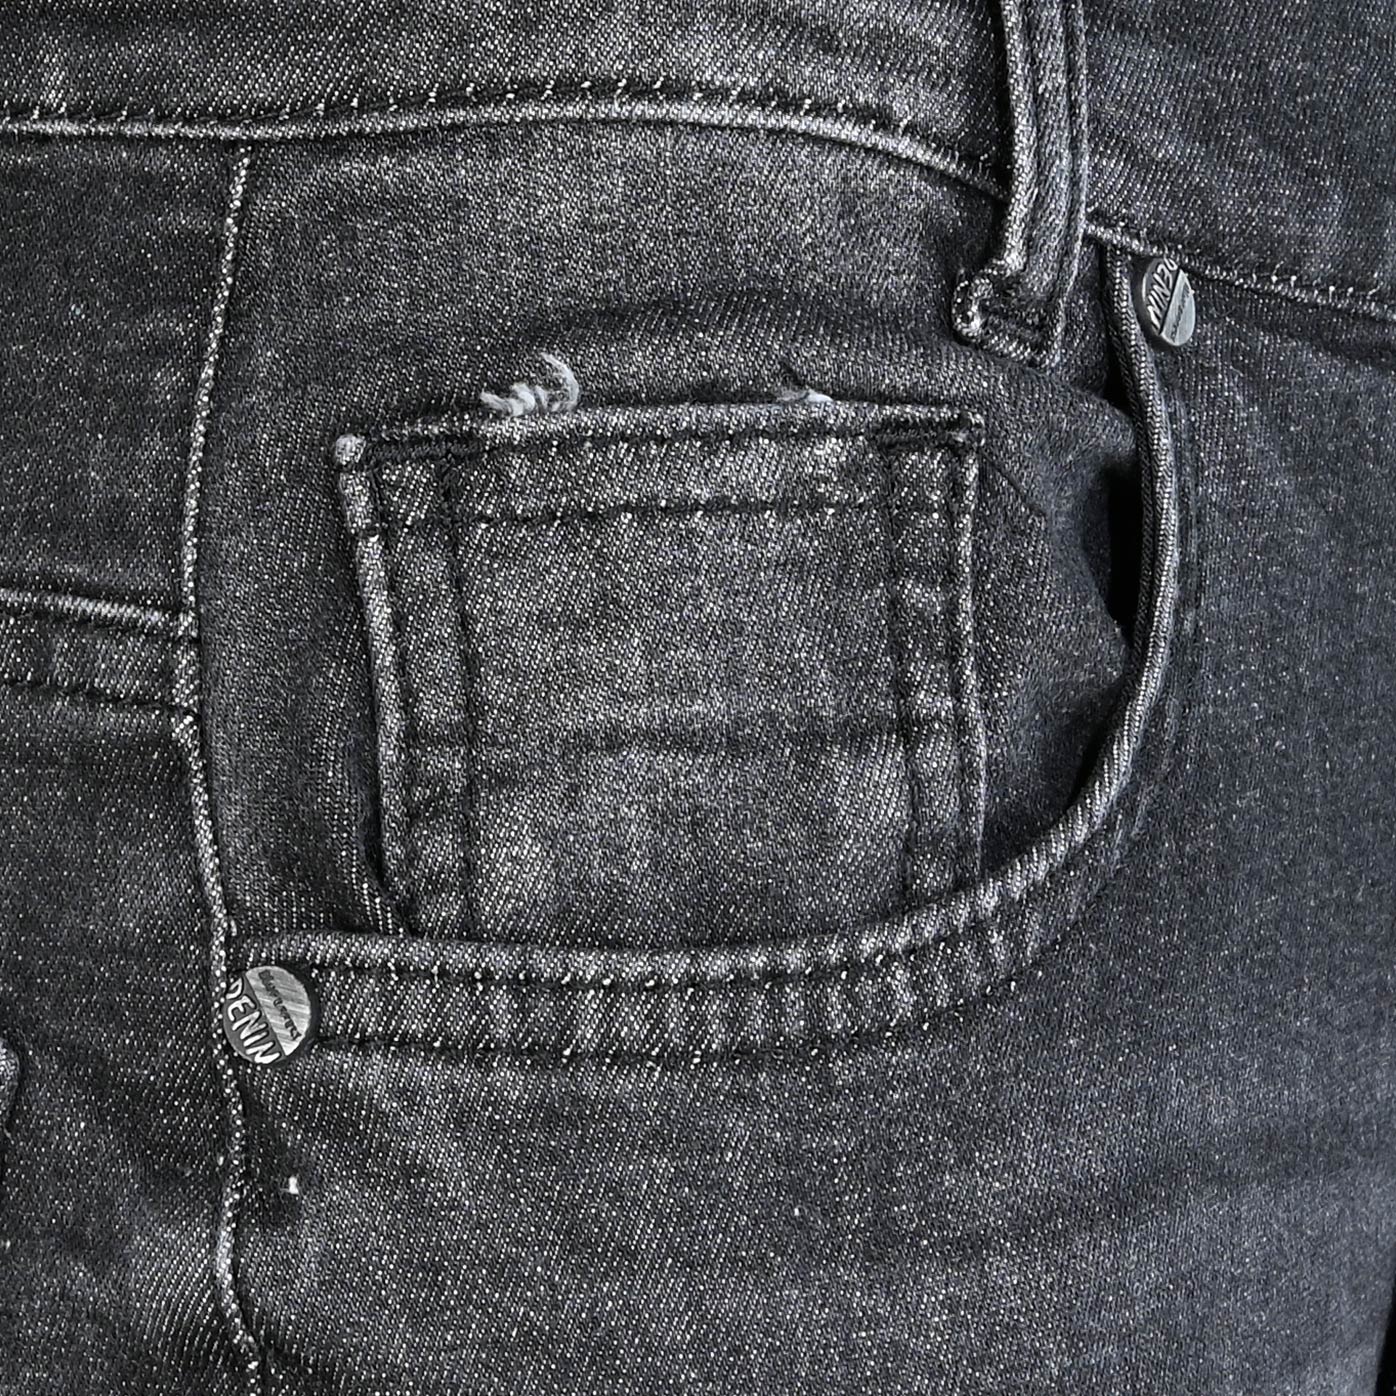 2813-NOS Boys Loose Fit Jeans verfügbar in Slim,Normal